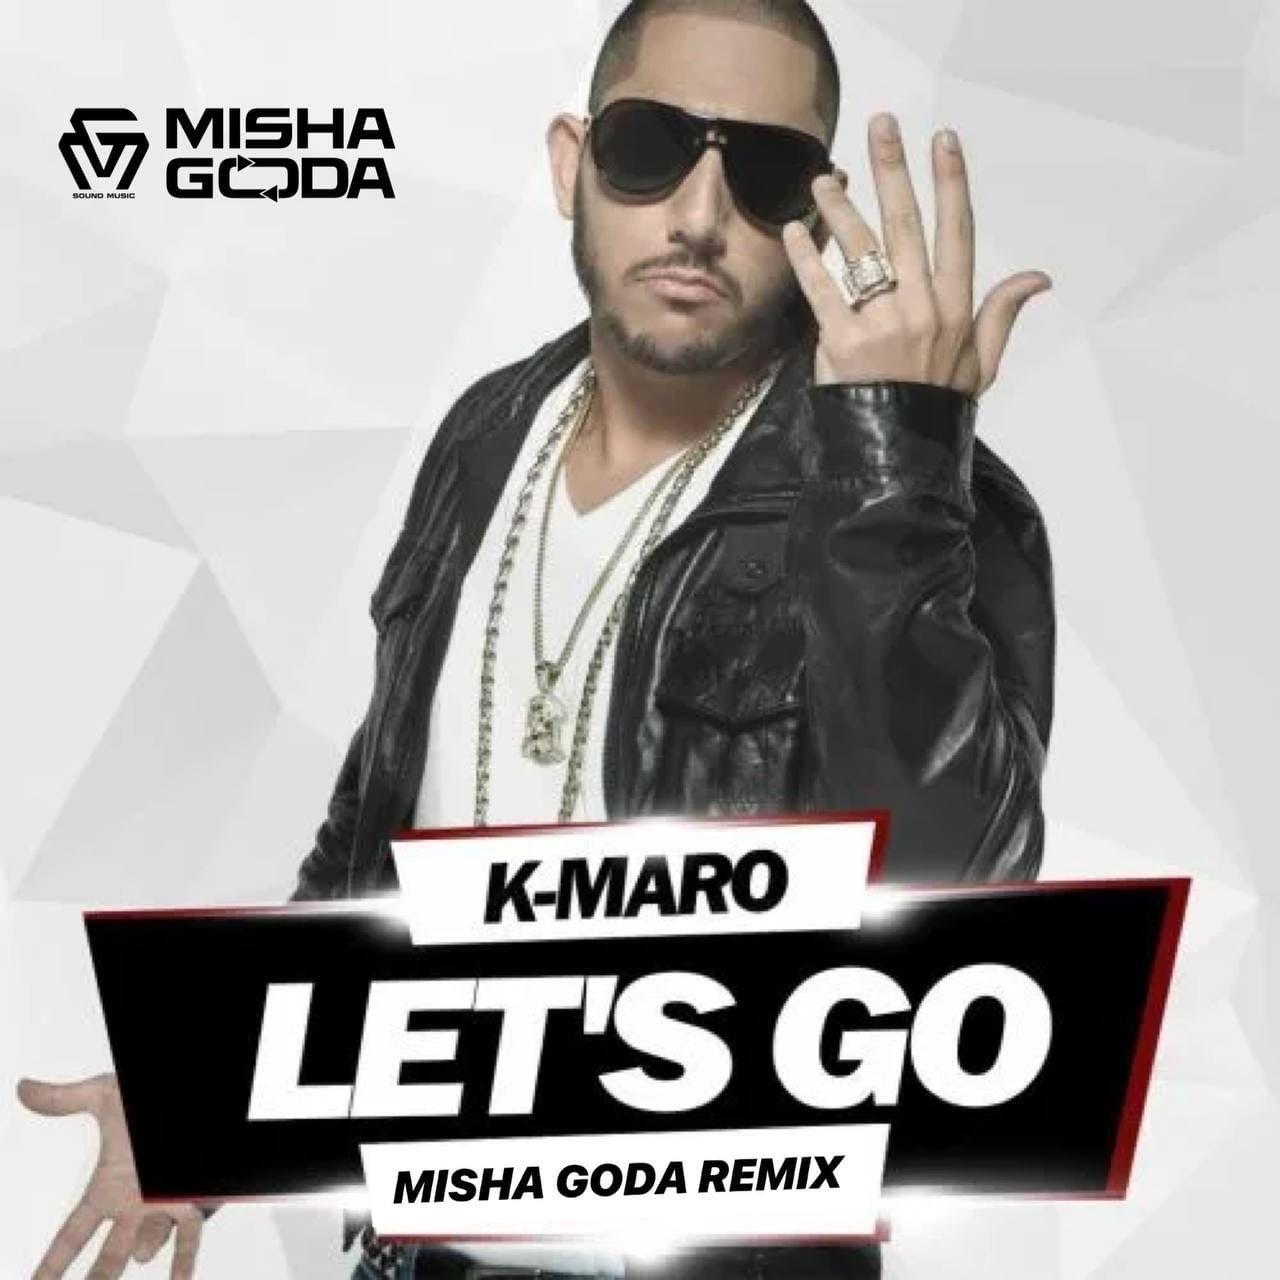 DJ Misha Goda - K-Maro - Let’s Go (Misha Goda Radio Edit) слушать онлайн ск...